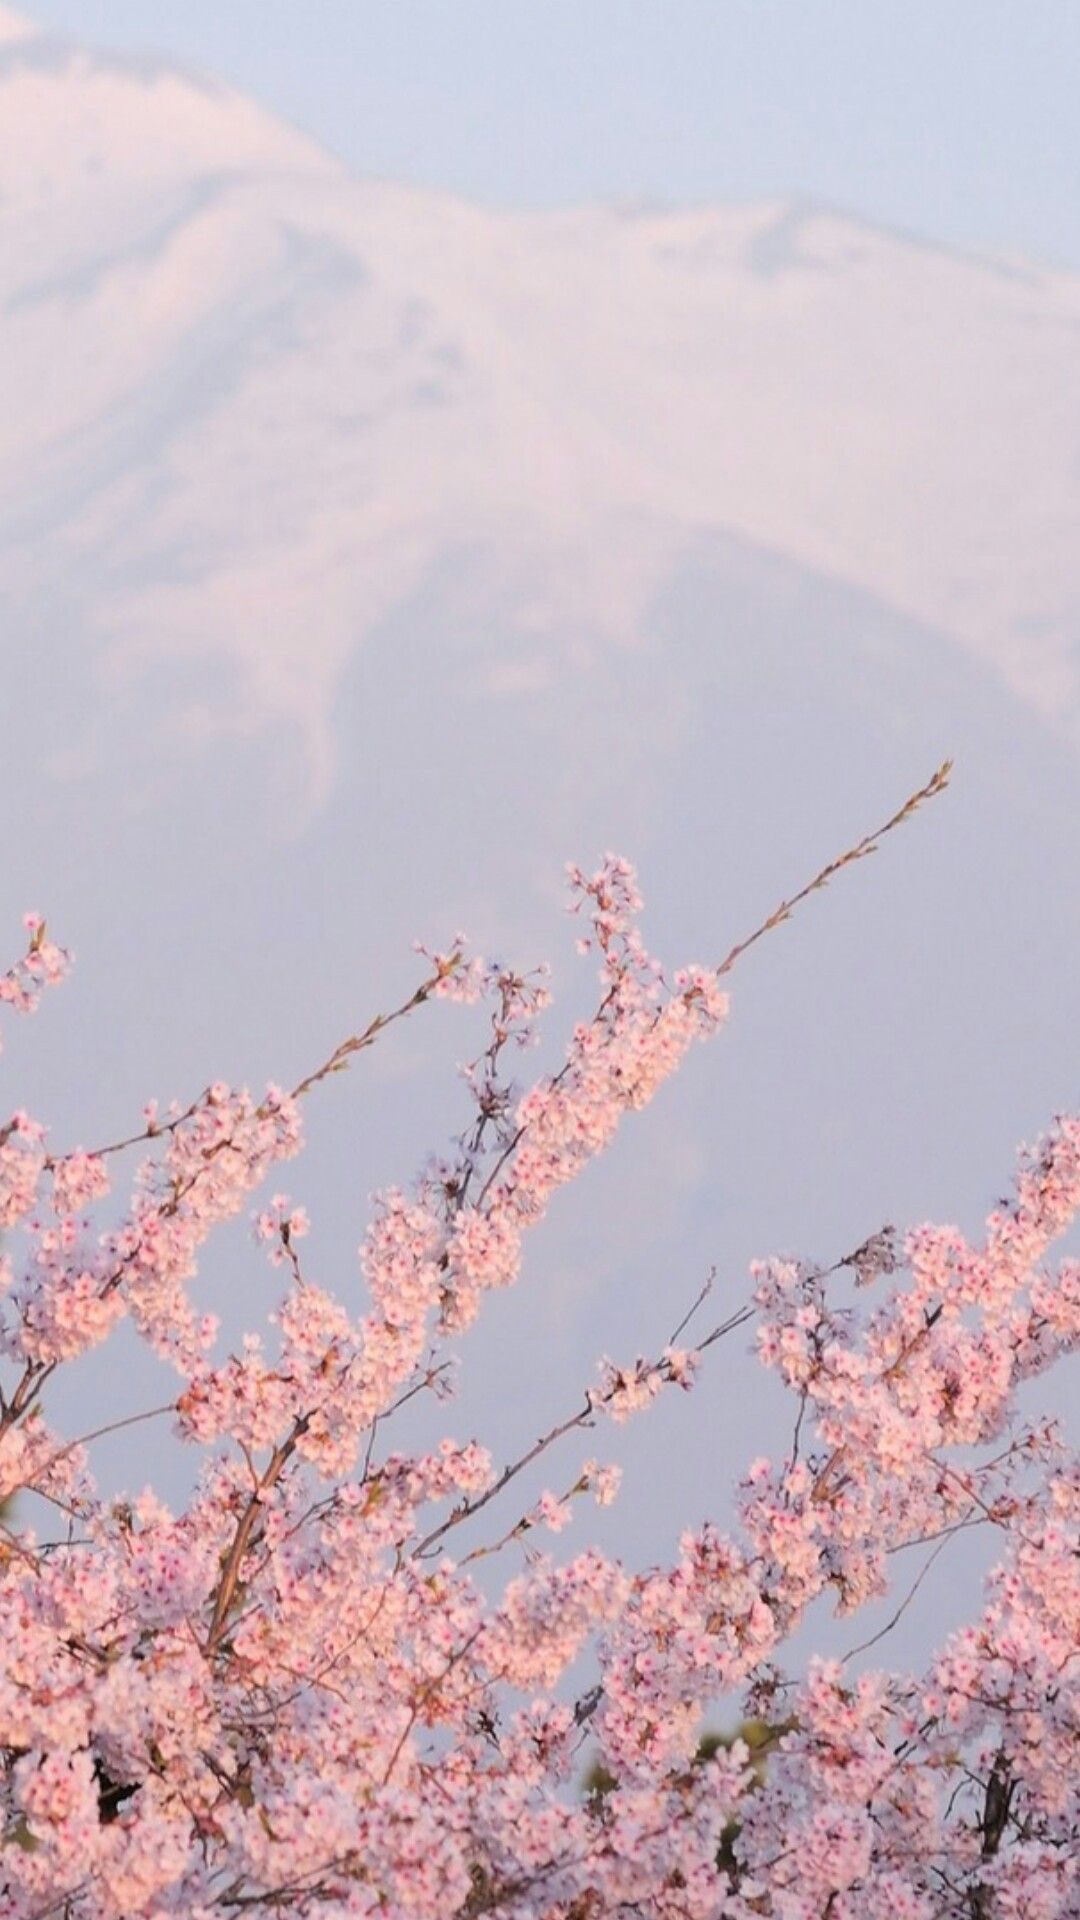 Free download sakura wallpaper Tumblr Kawaii Aesthetic in ...